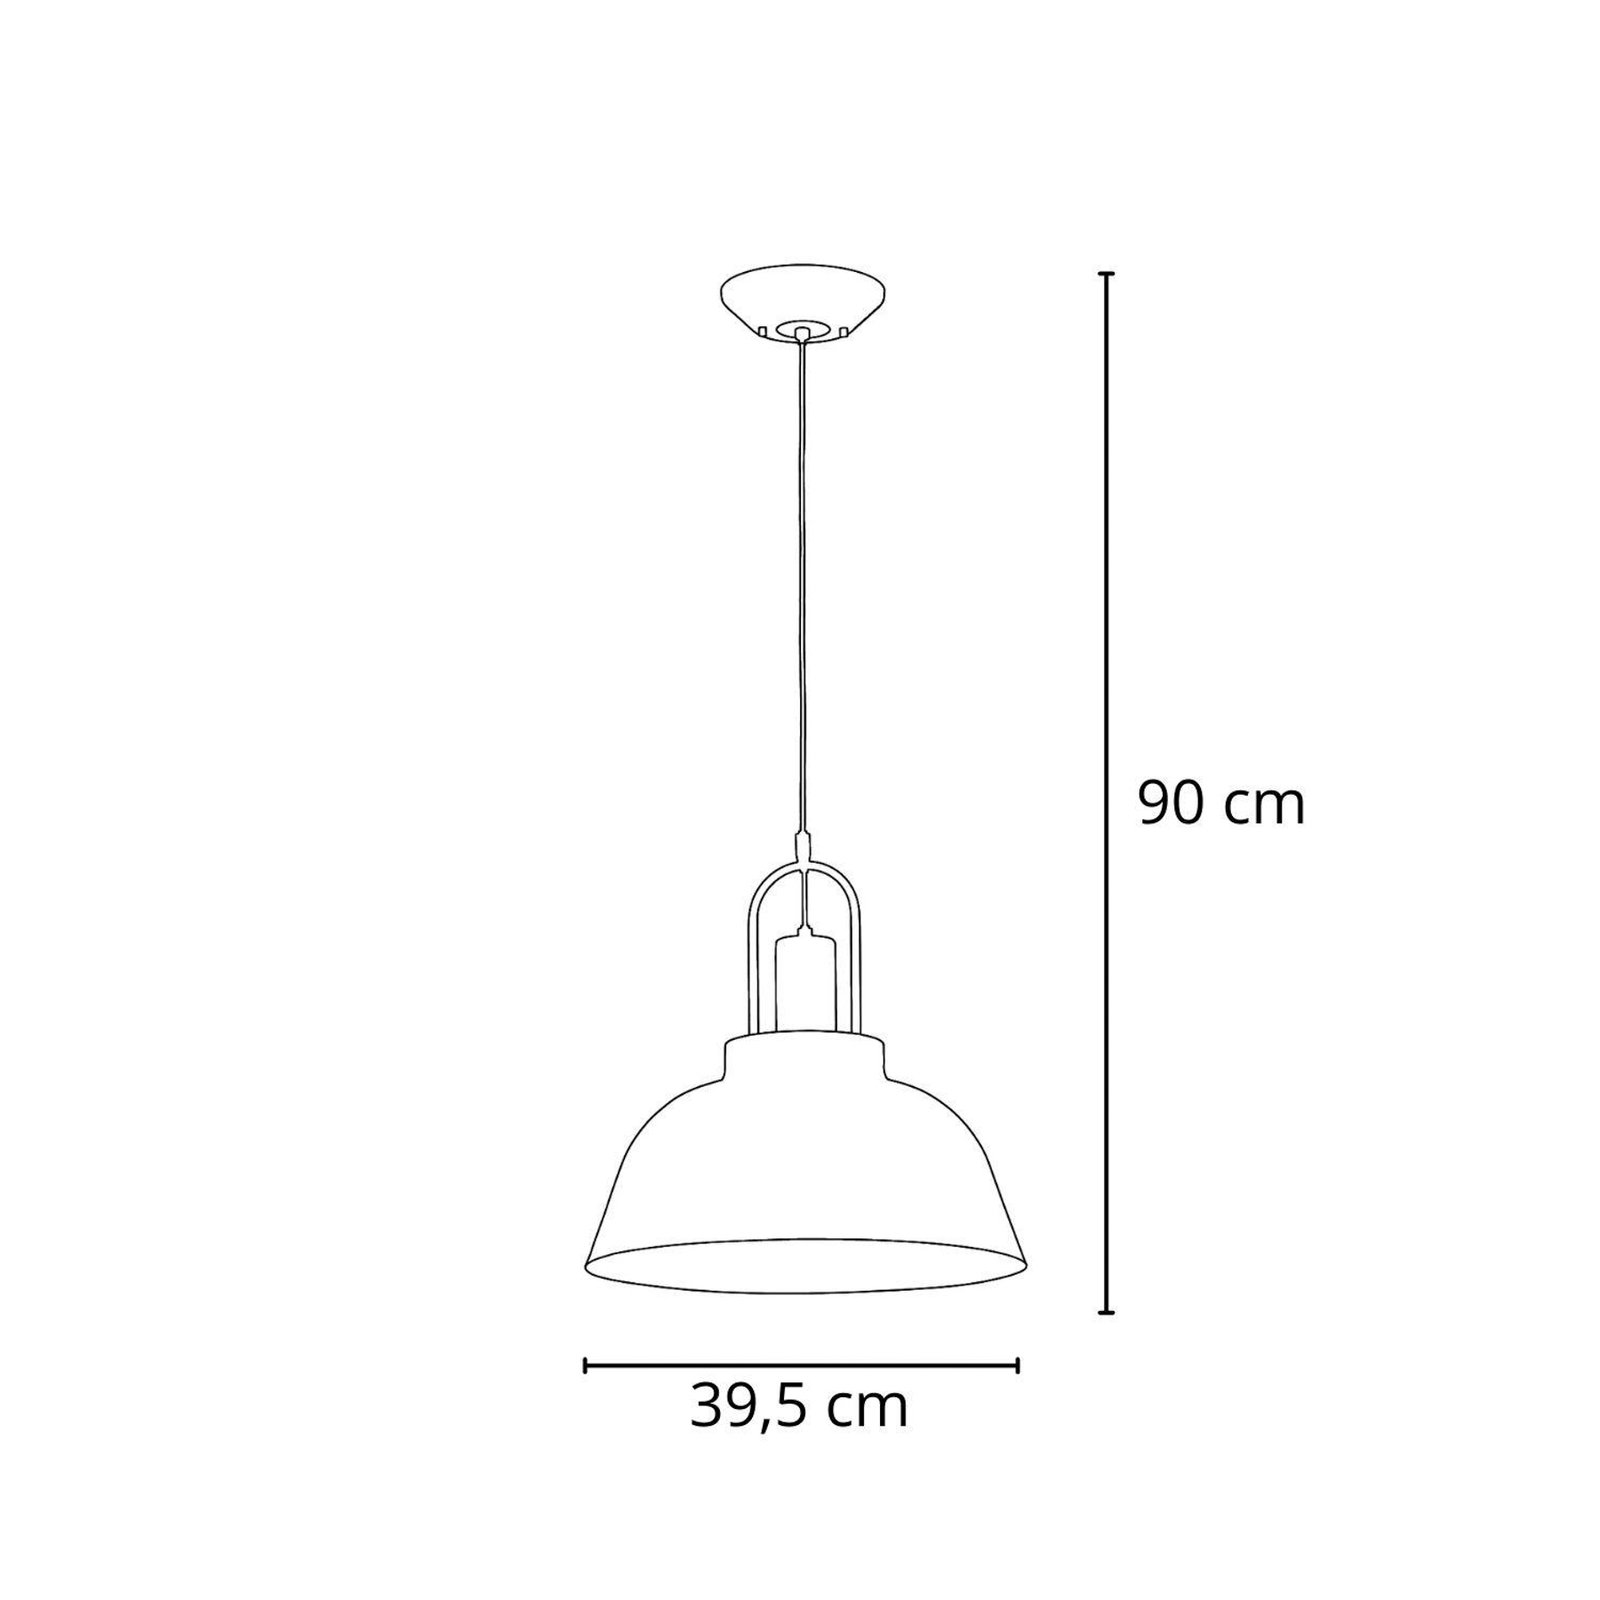 Lampă suspendată Mirave, negru / auriu, Ø 39,5 cm, metal